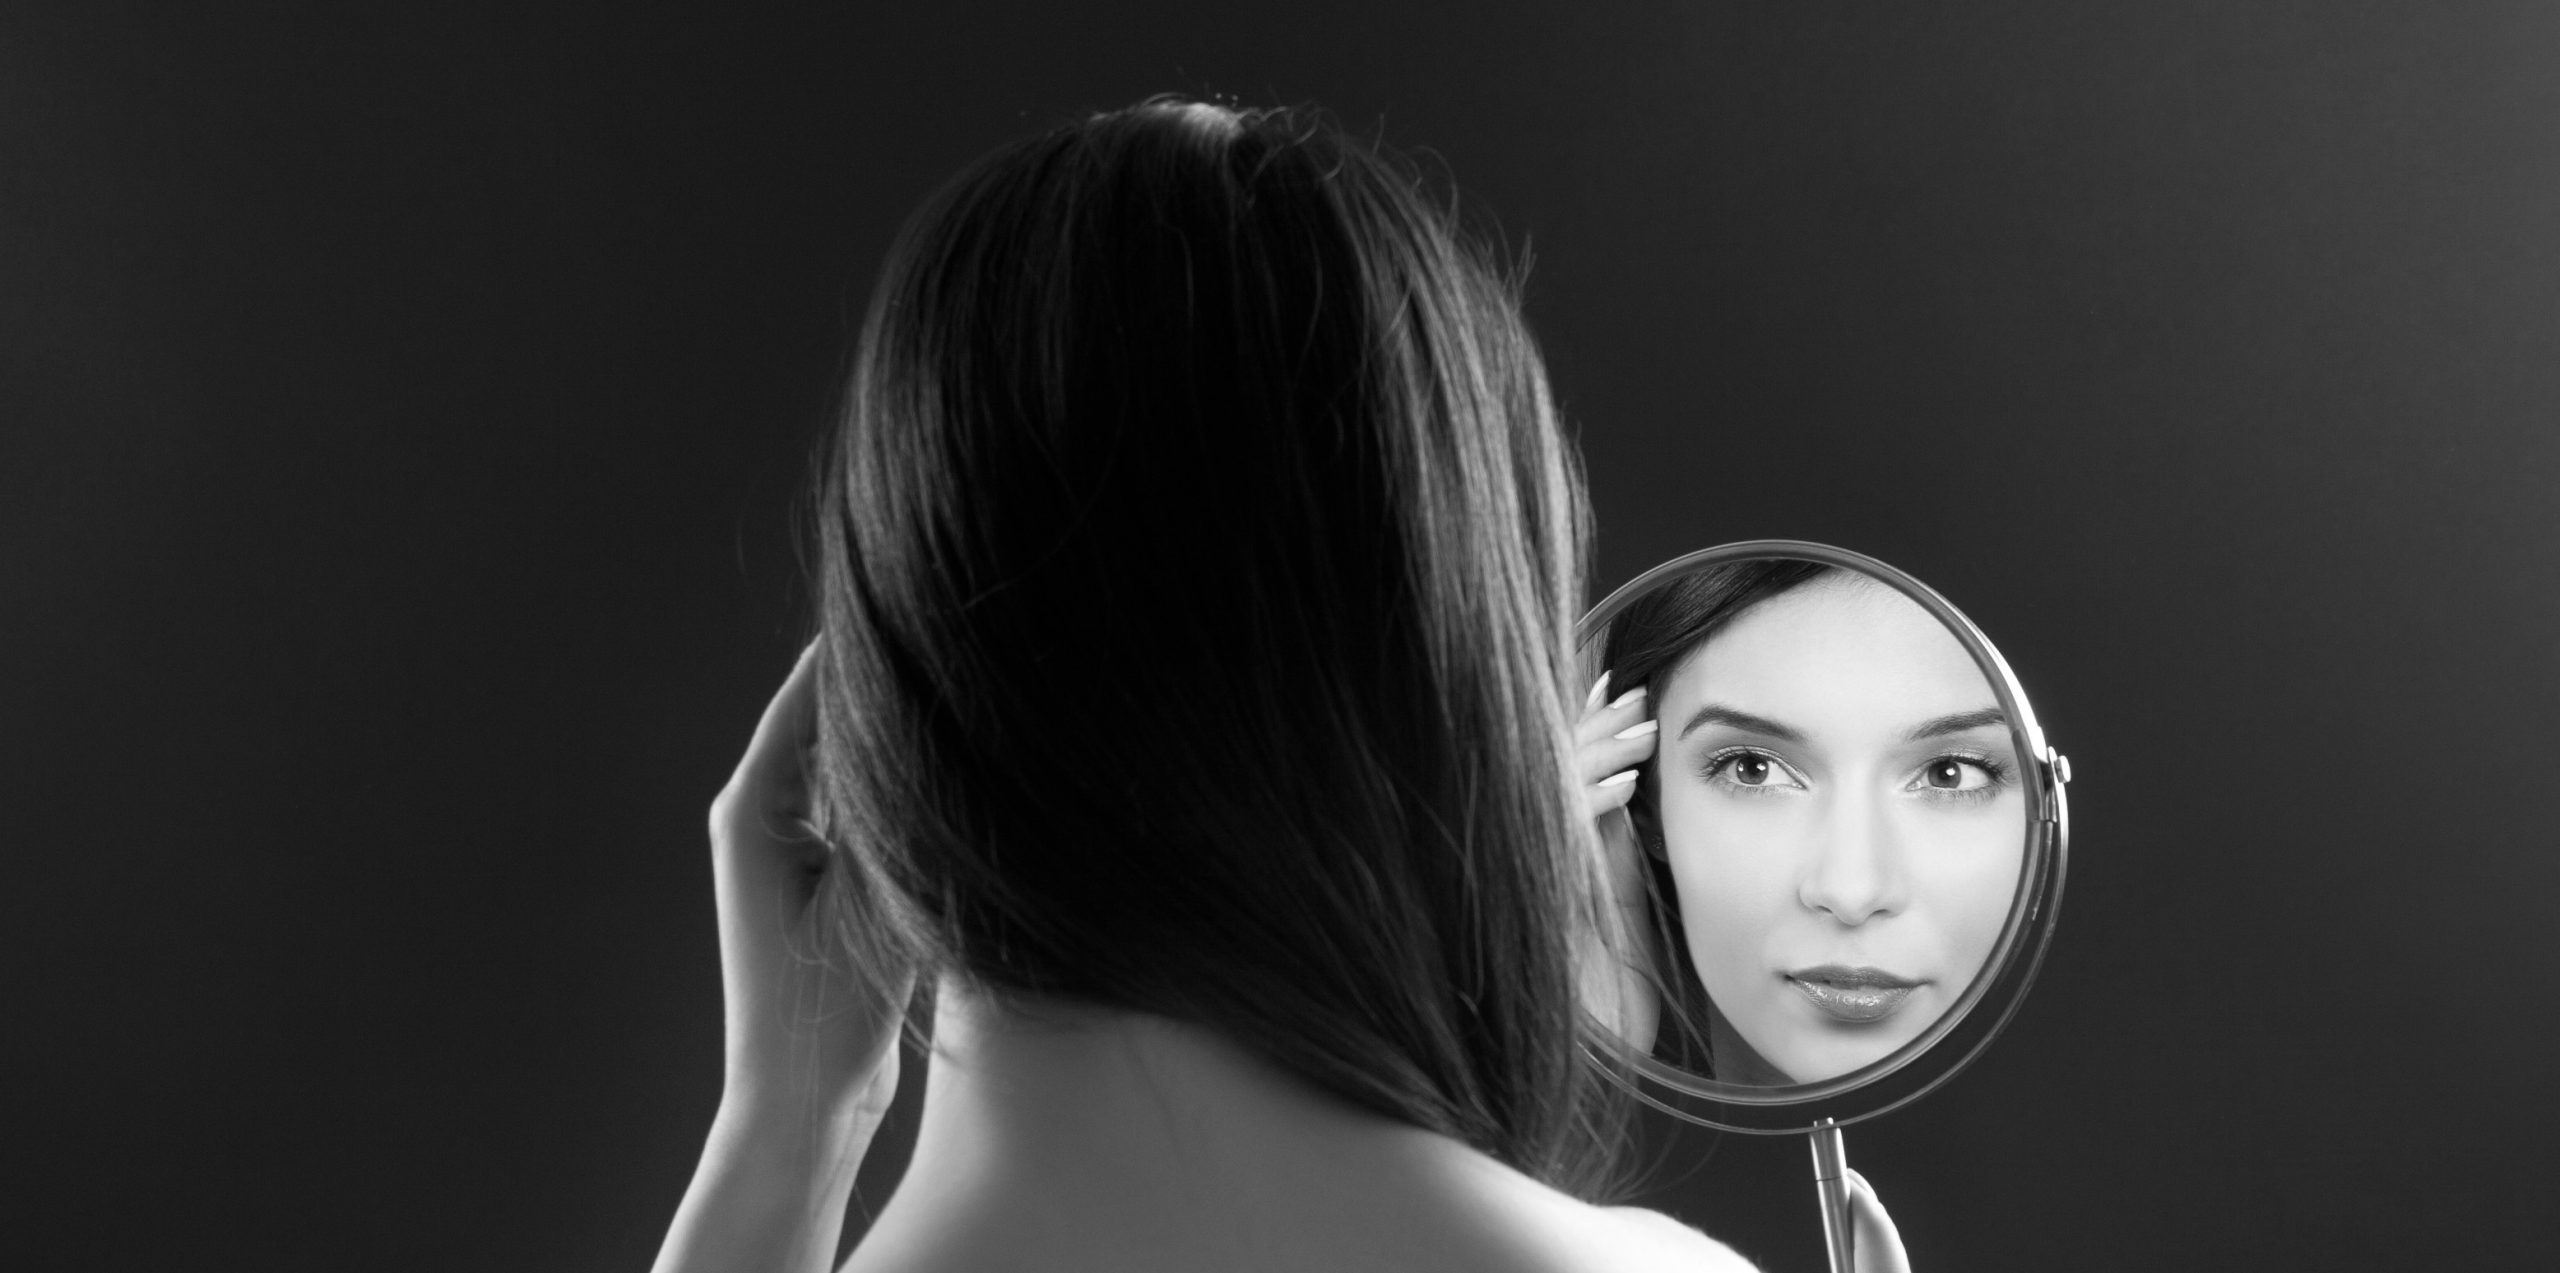 Отражались какое лицо. Отражение в зеркале. Девушка смотрится в зеркало. Отражение лица в зеркале. Девушка в отражении зеркала.